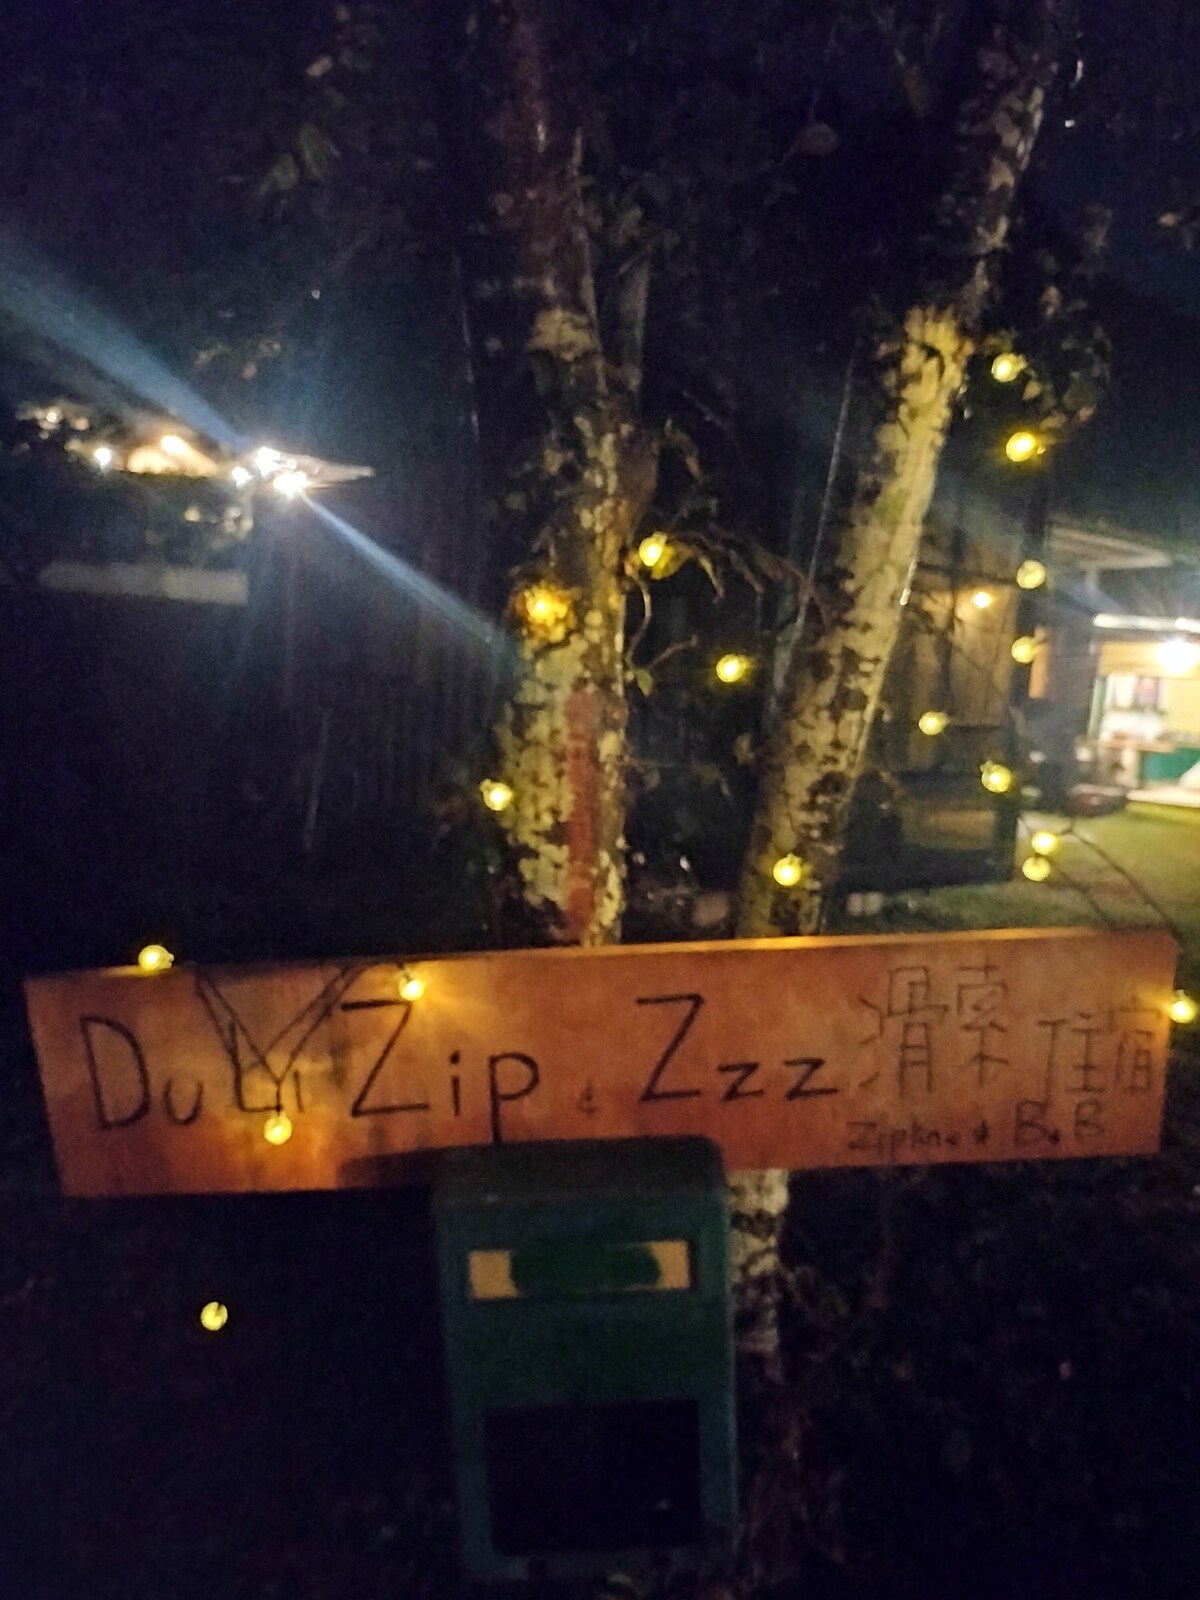 寧靜景觀房
Duli Zip & Zzz都歷滑索住宿高空滑索旅舍